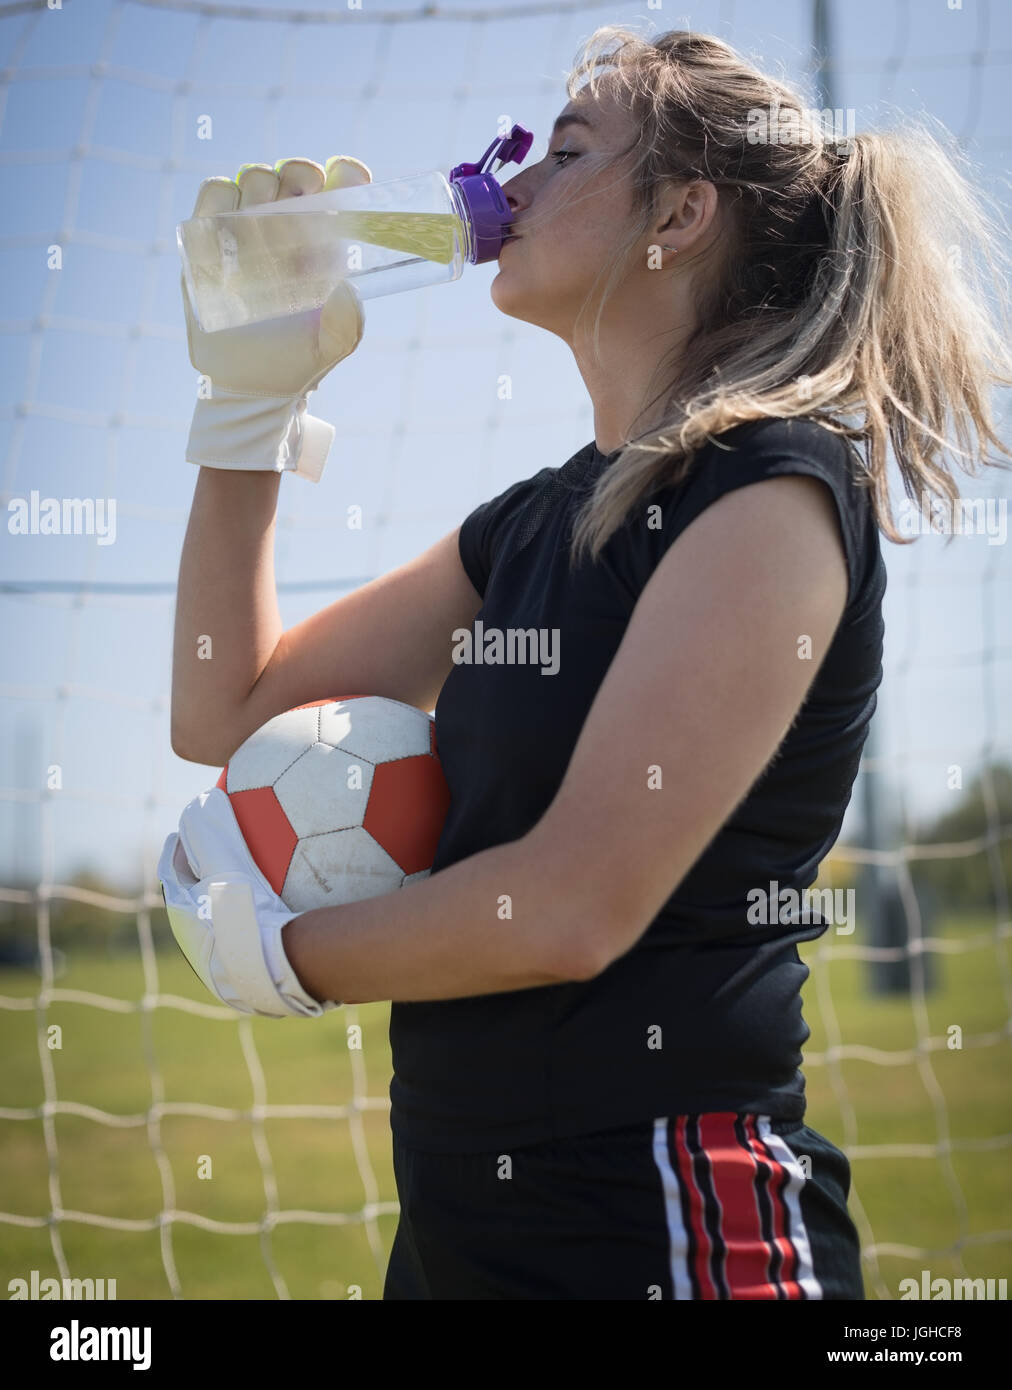 Soif jeune joueur de soccer féminin de l'eau potable tout en maintenant ball Banque D'Images